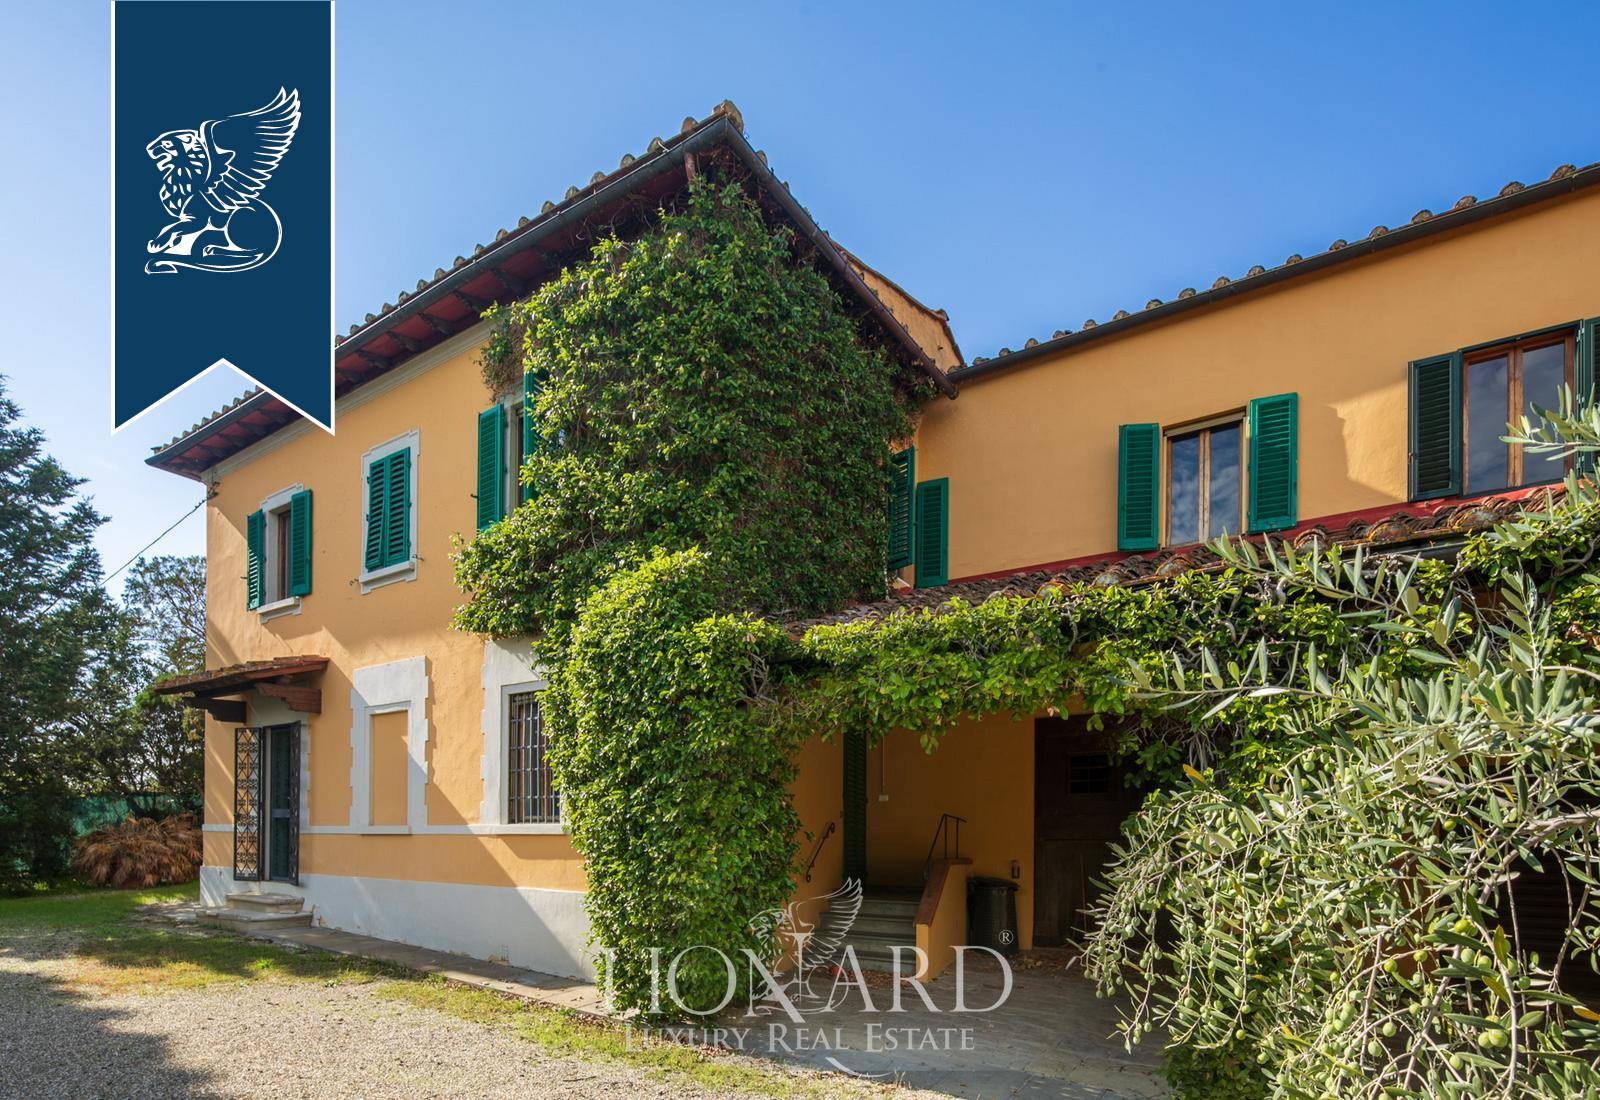 Villa in Vendita a Firenze: 0 locali, 380 mq - Foto 3